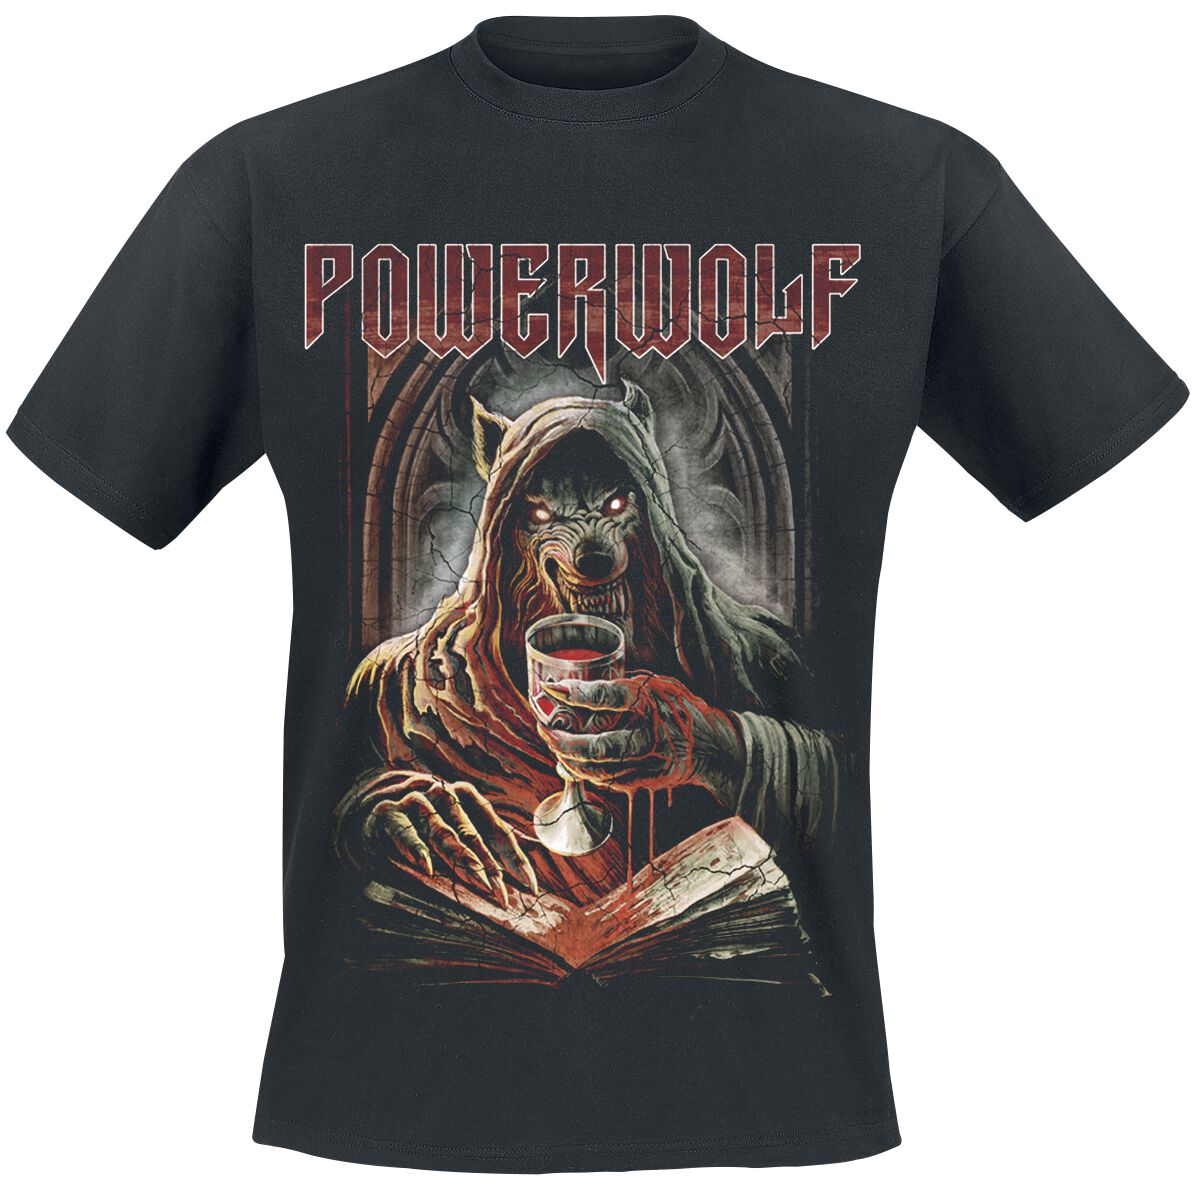 Powerwolf T-Shirt - Your Blood - S bis XXL - für Männer - Größe M - schwarz  - Lizenziertes Merchandise!